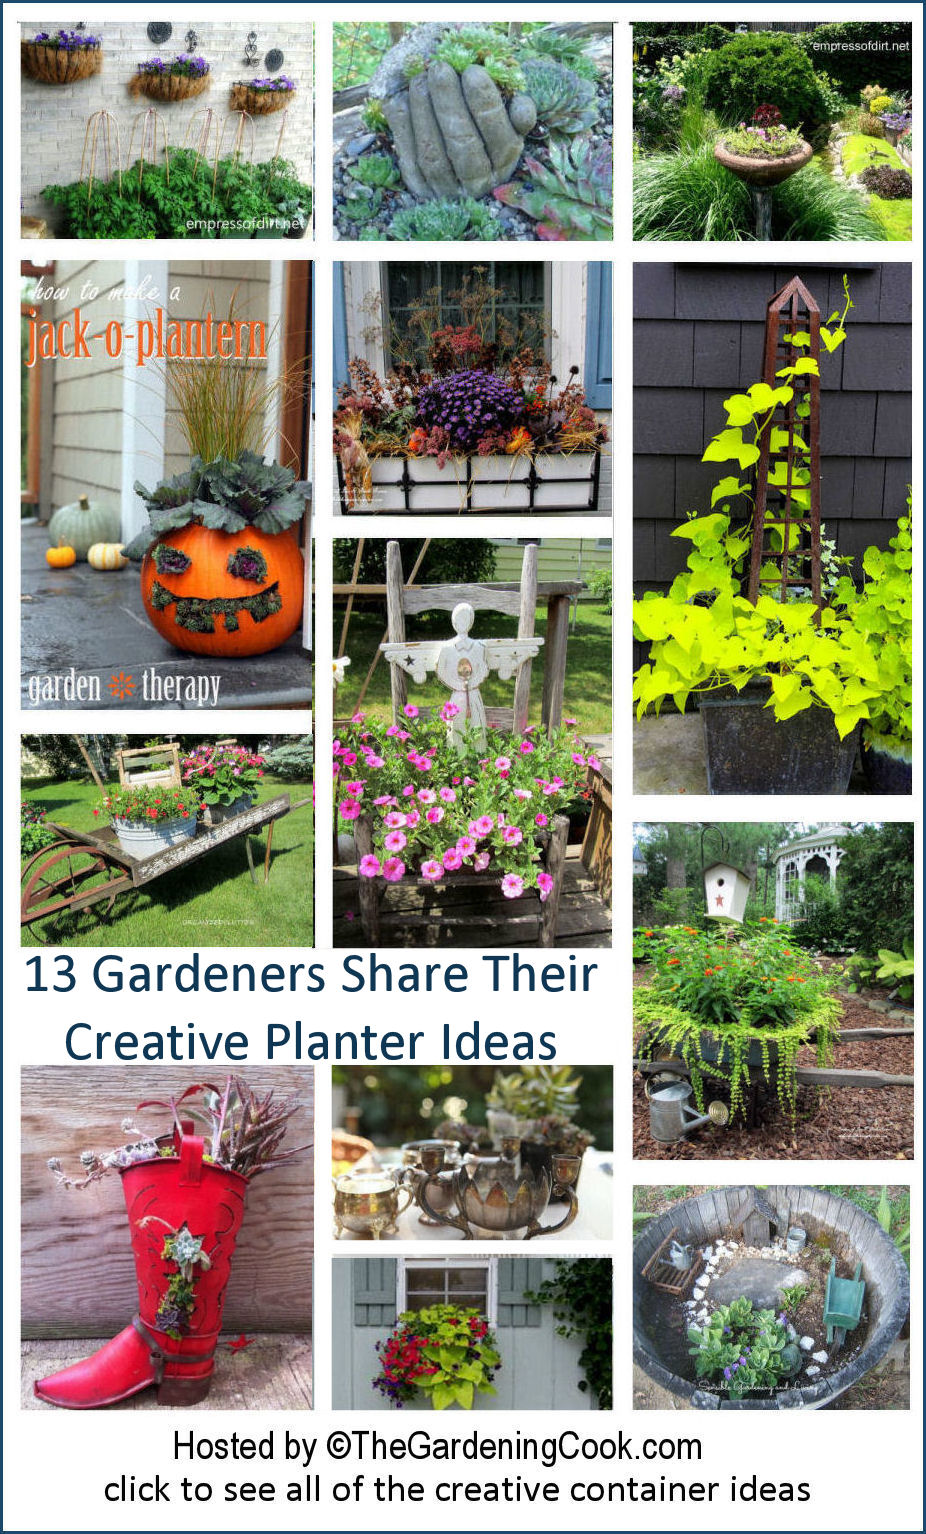 Jardinières créatives - Les blogueurs jardiniers partagent leurs idées de jardinières créatives